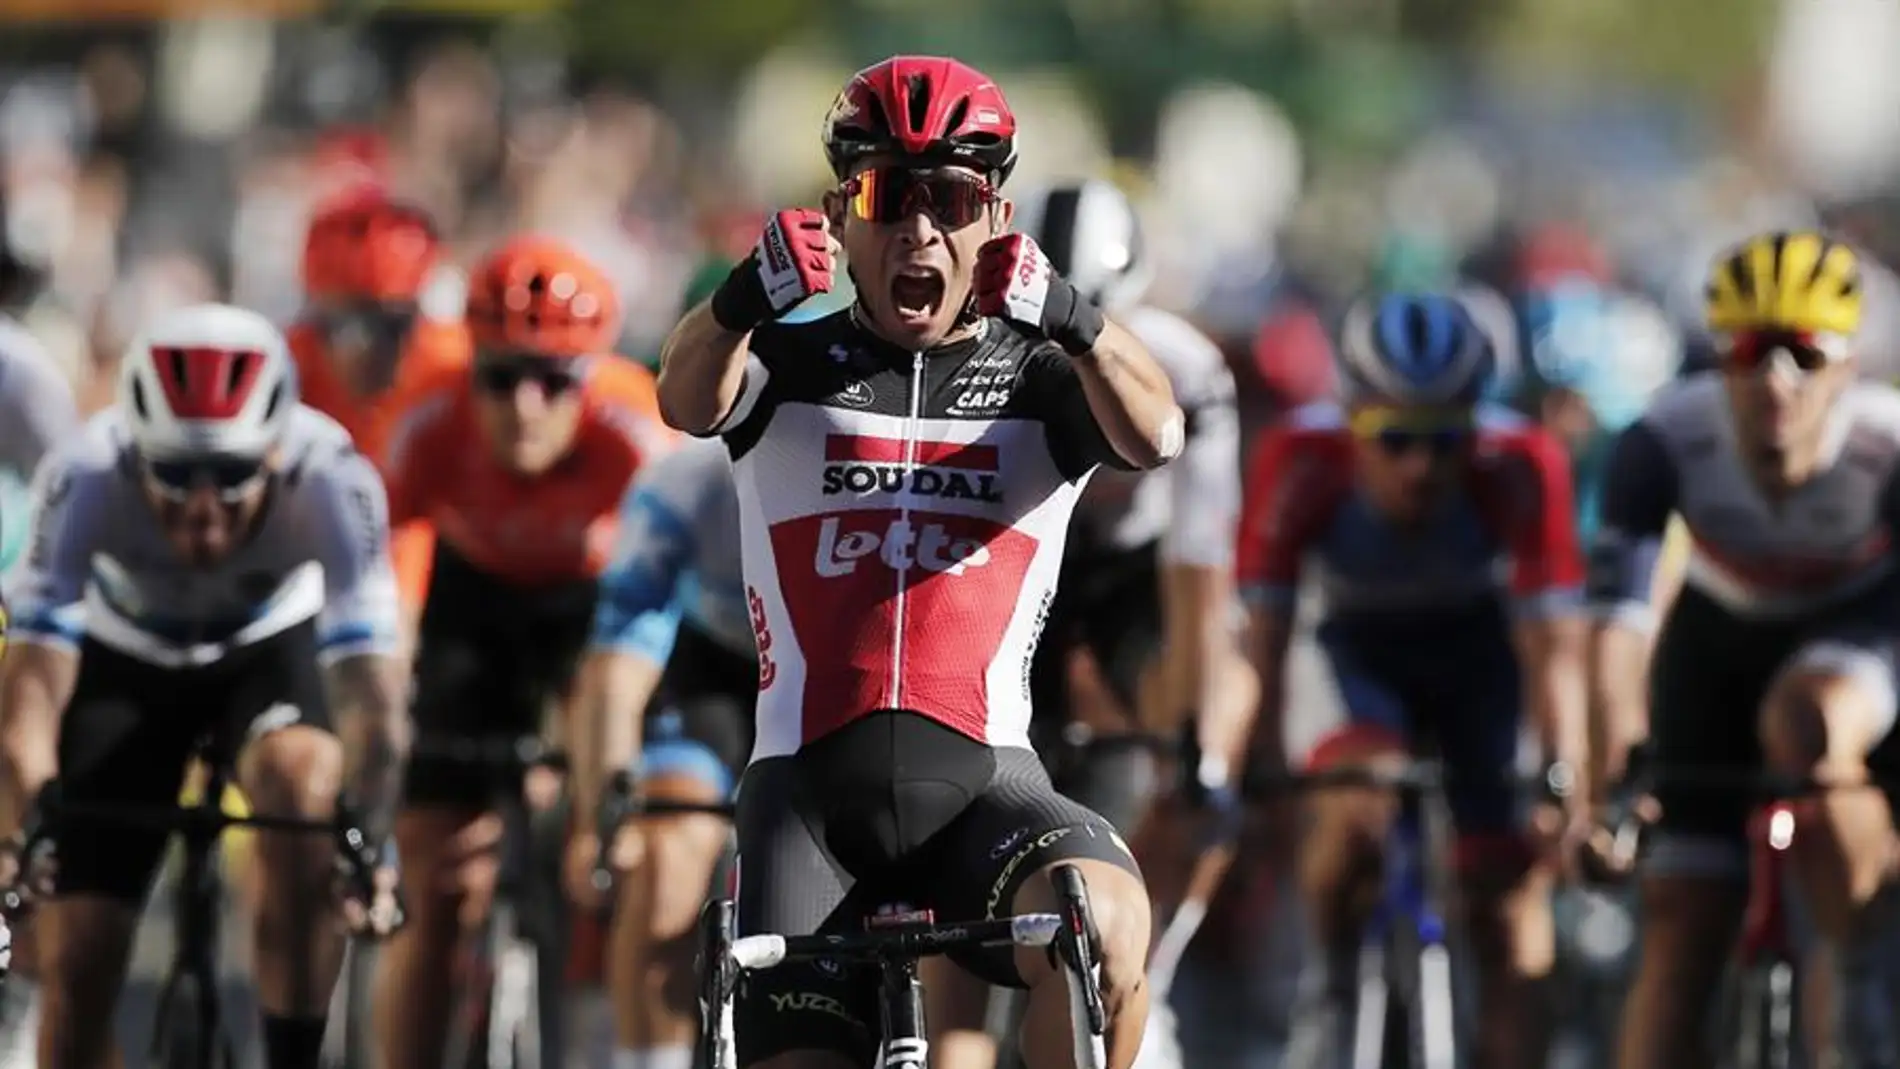 Cadel Ewan gana al esprint en Sisteron y Alaphilippe sigue líder del Tour de Francia